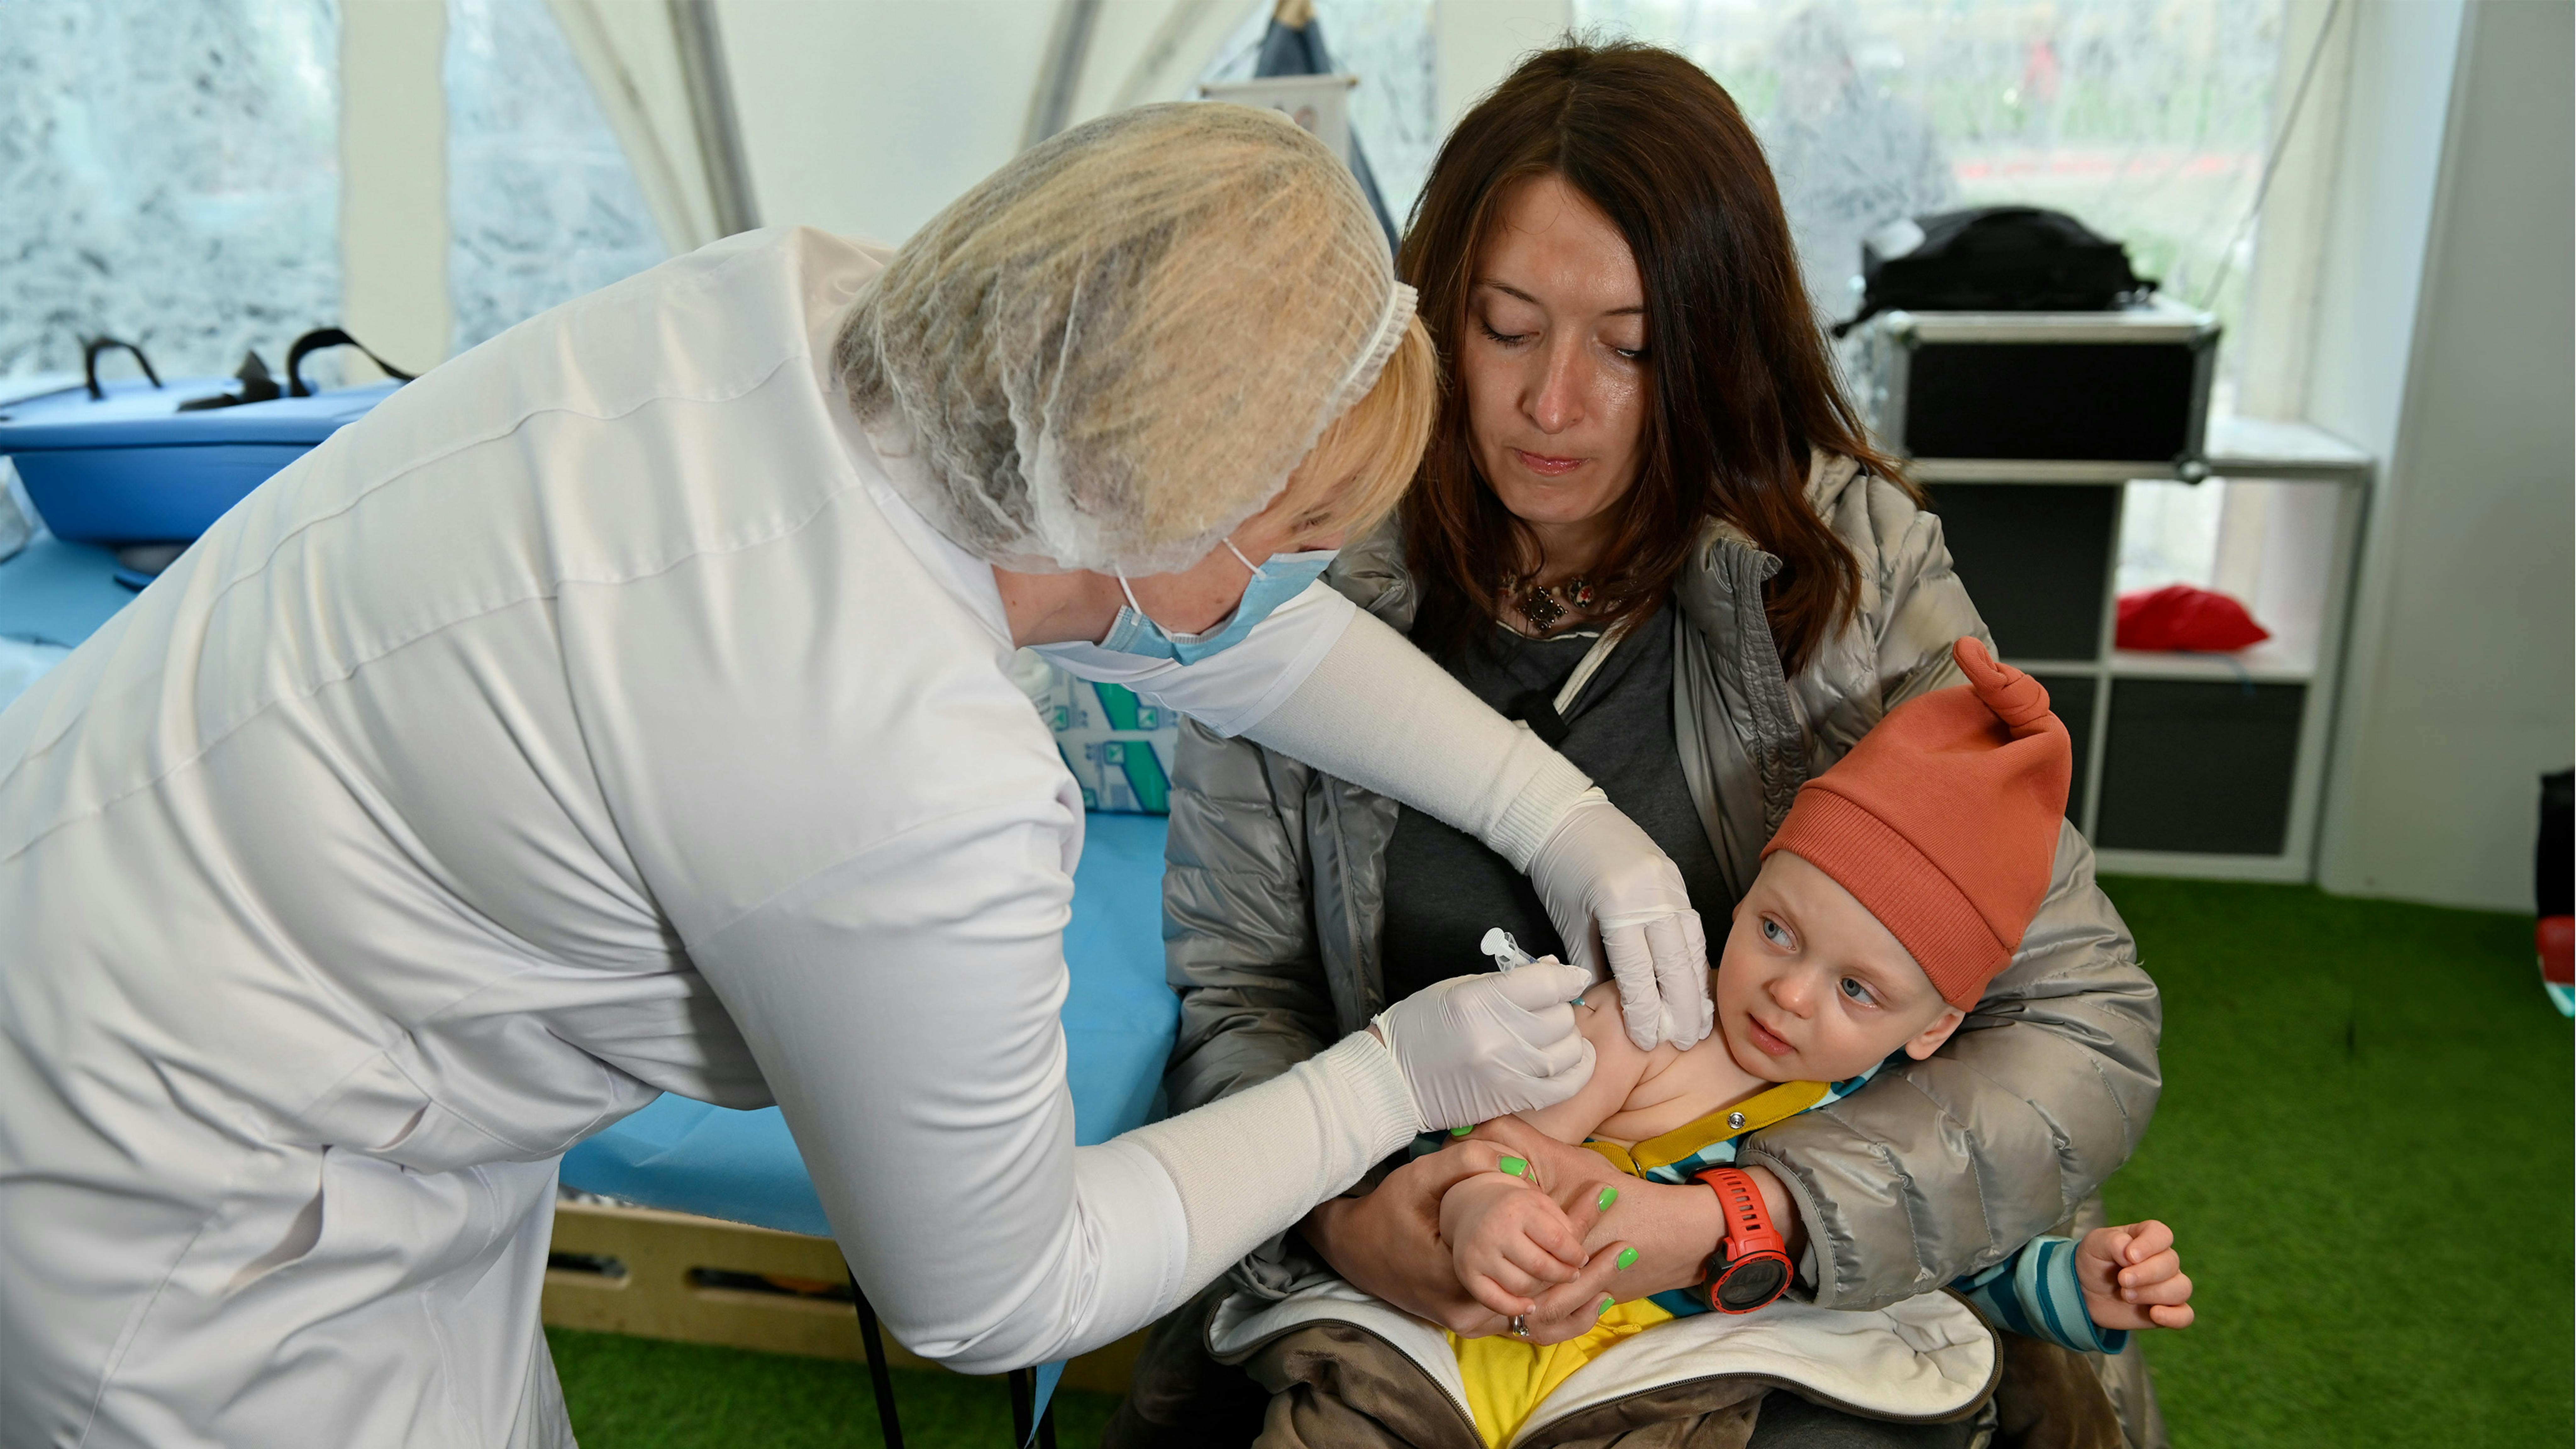 Spilno Child Spot a Kiev, Ucraina. Una madre ha portato il suo bambino per farlo vaccinare